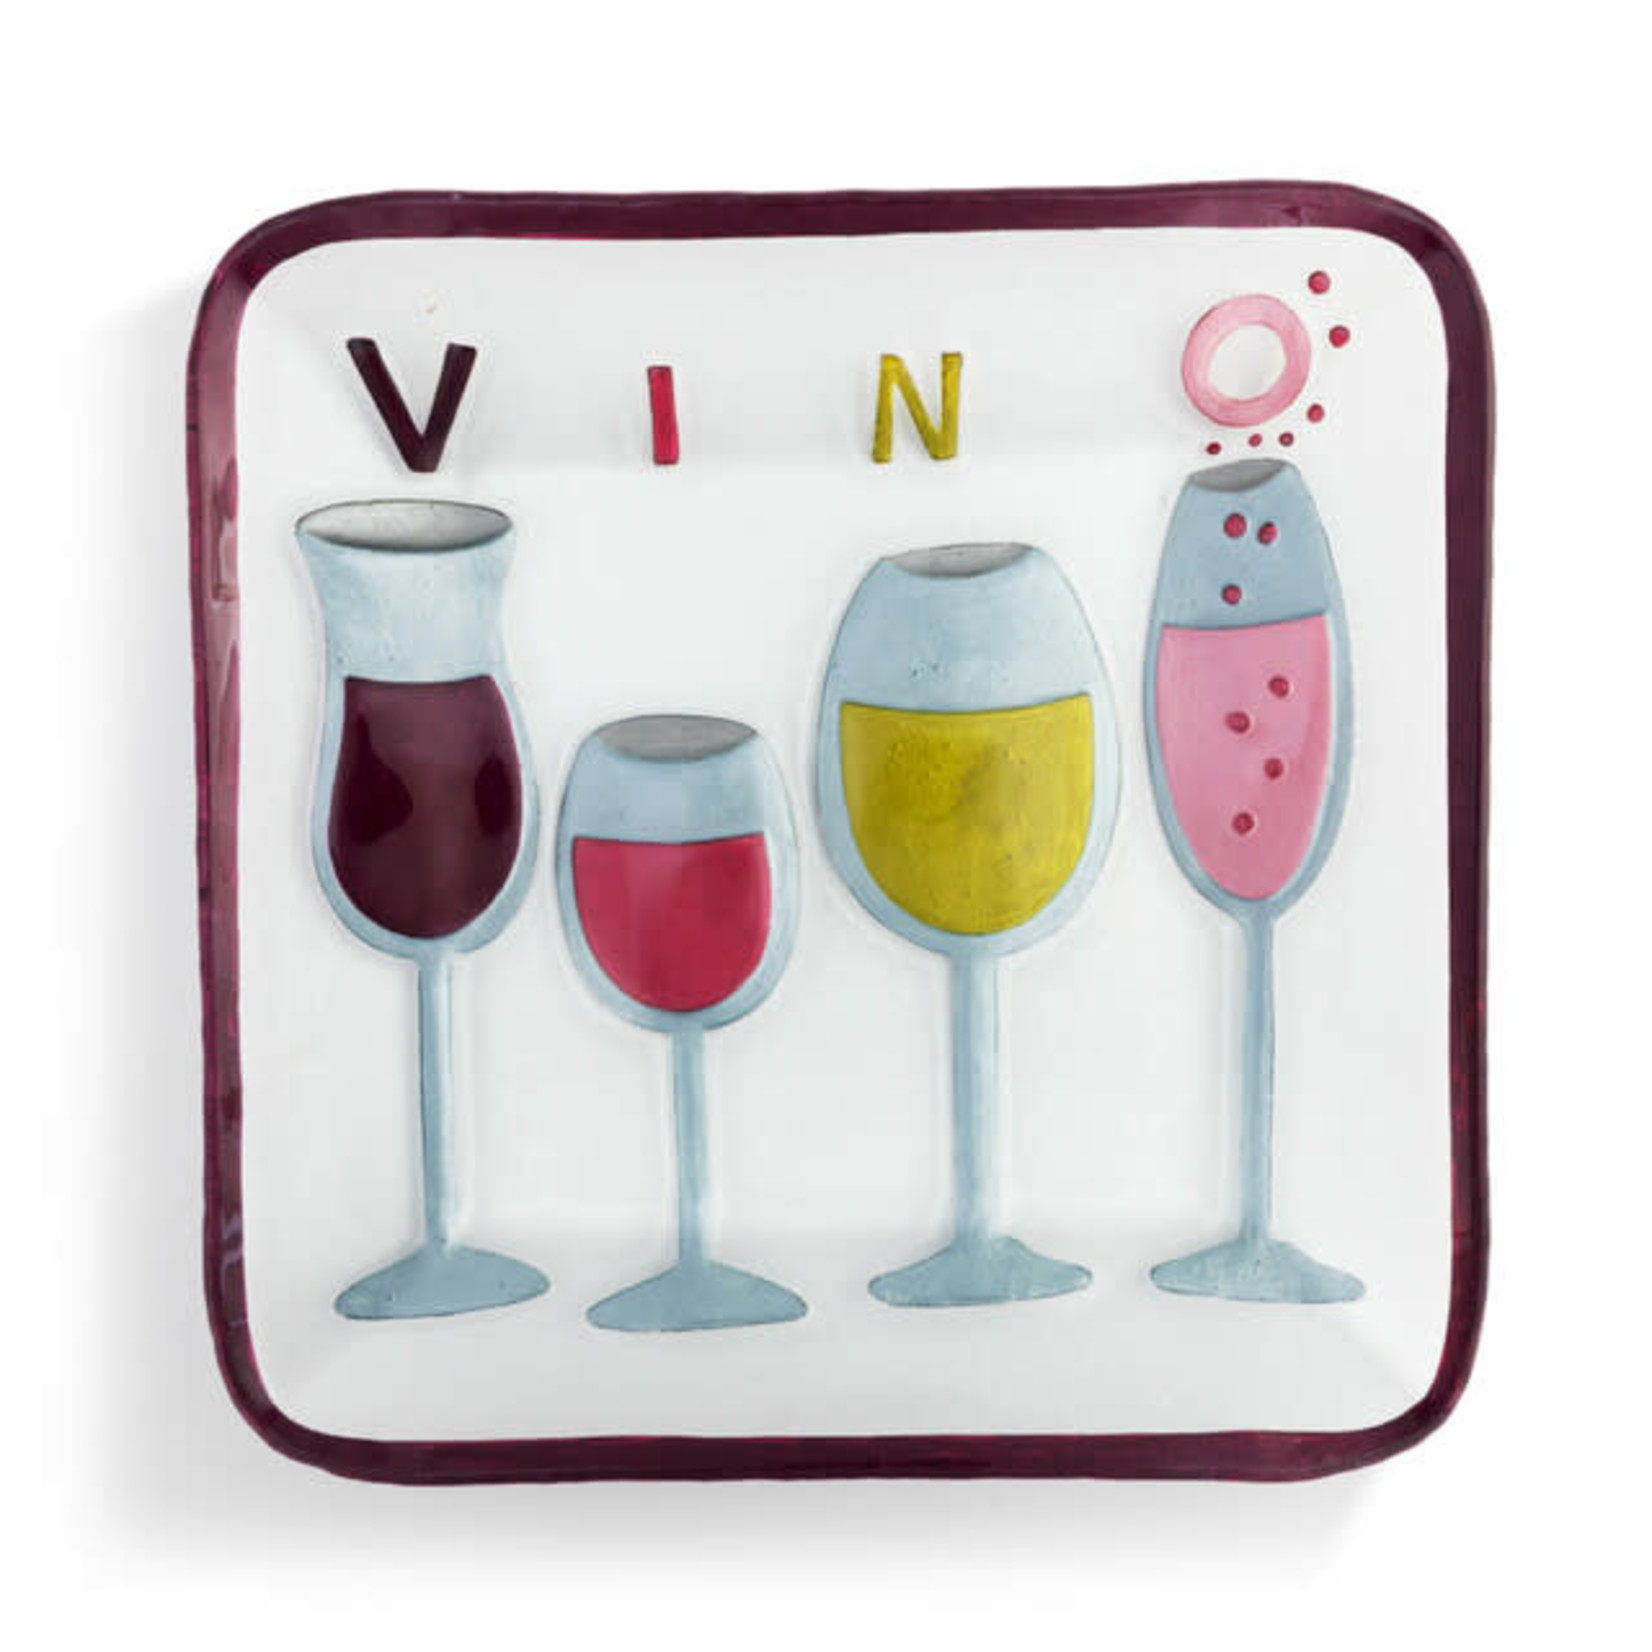 VINO WINE GLASS SQUARE PLATE